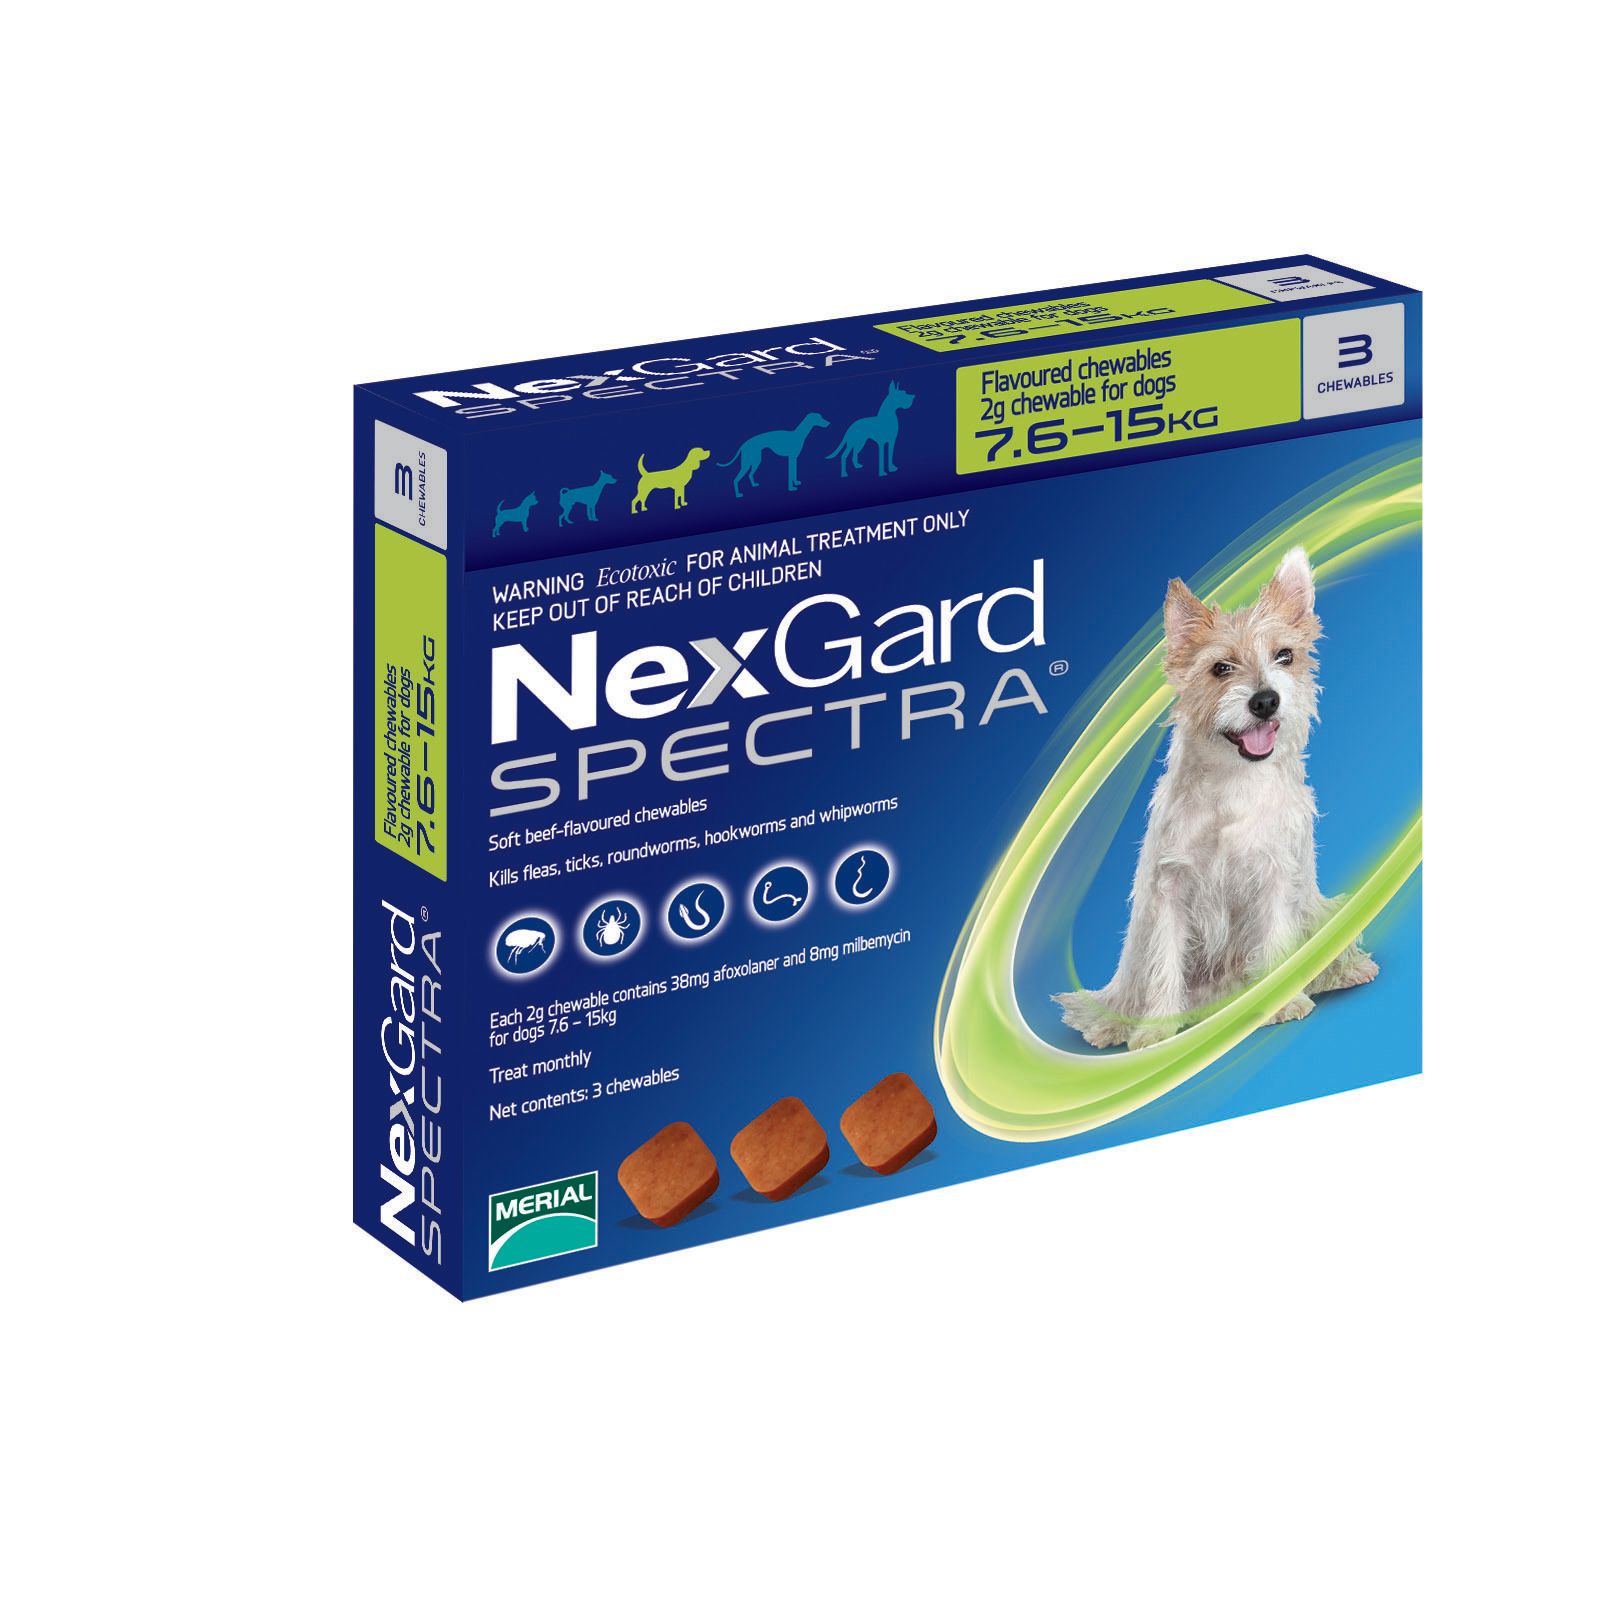 Нексгард для собак 2 4 кг. Фронтлайн НЕКСГАРД спектра. NEXGARD Spectra для собак. НЕКСГАРД для собак. Фронтлайн НЕКСГАРД спектр для собак.